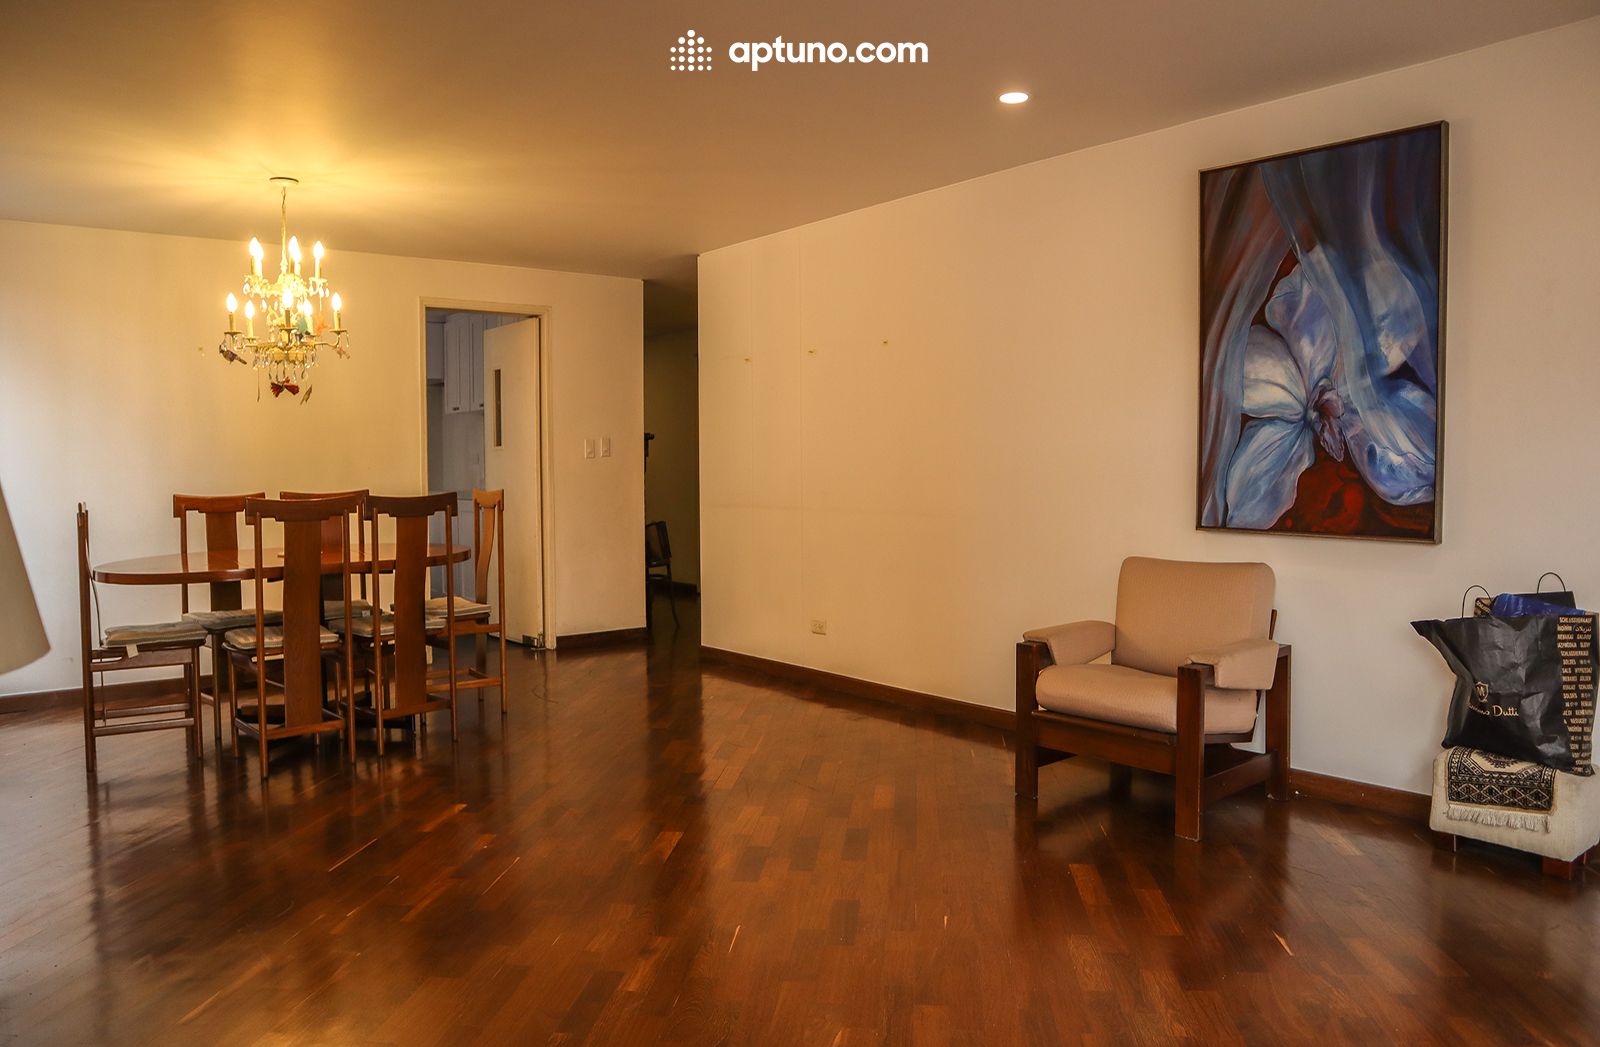 Apartamento en arriendo Chicó Norte 155 m² - $ 5.800.000,00